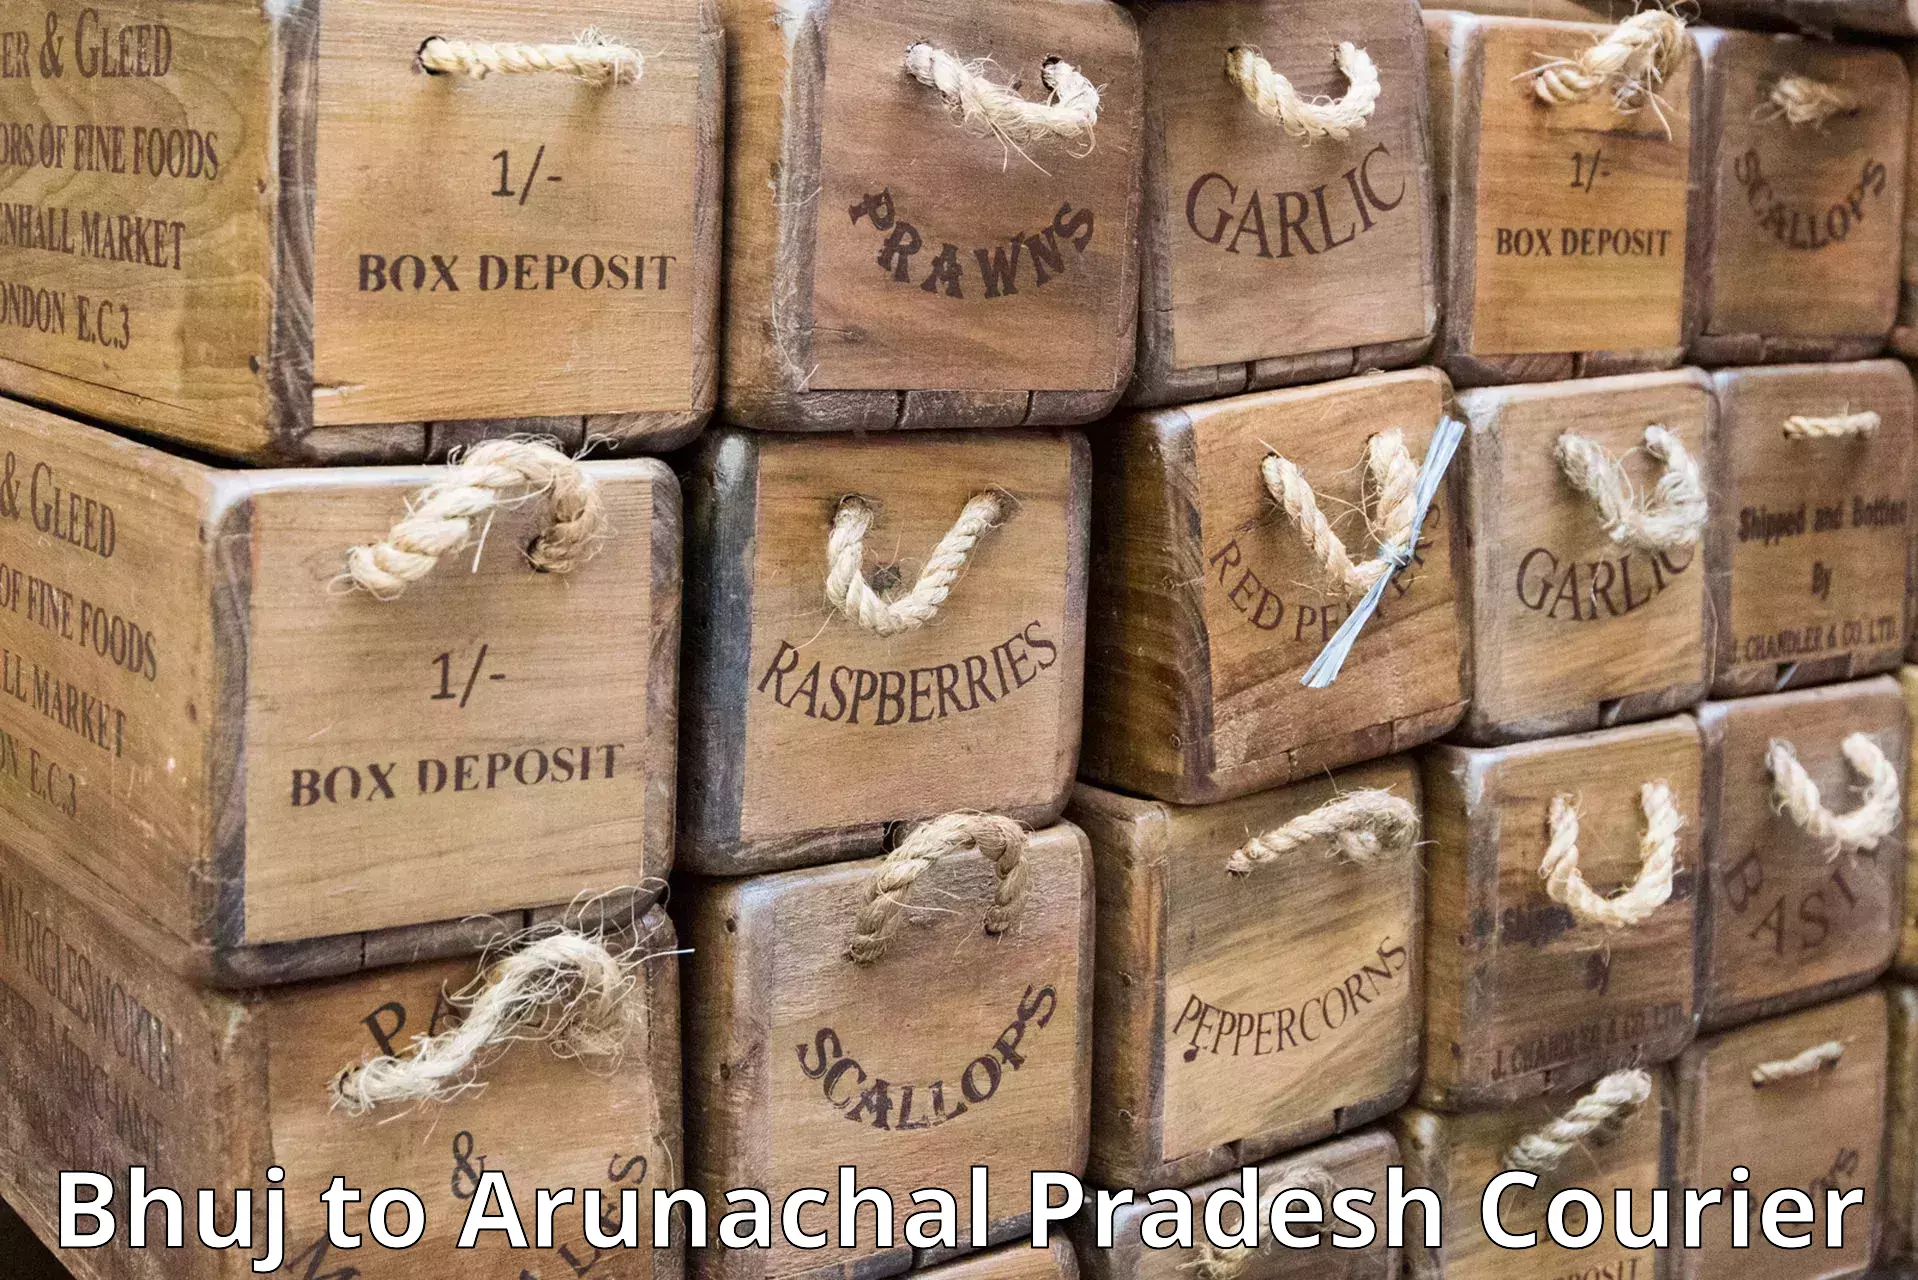 Courier service comparison Bhuj to Arunachal Pradesh